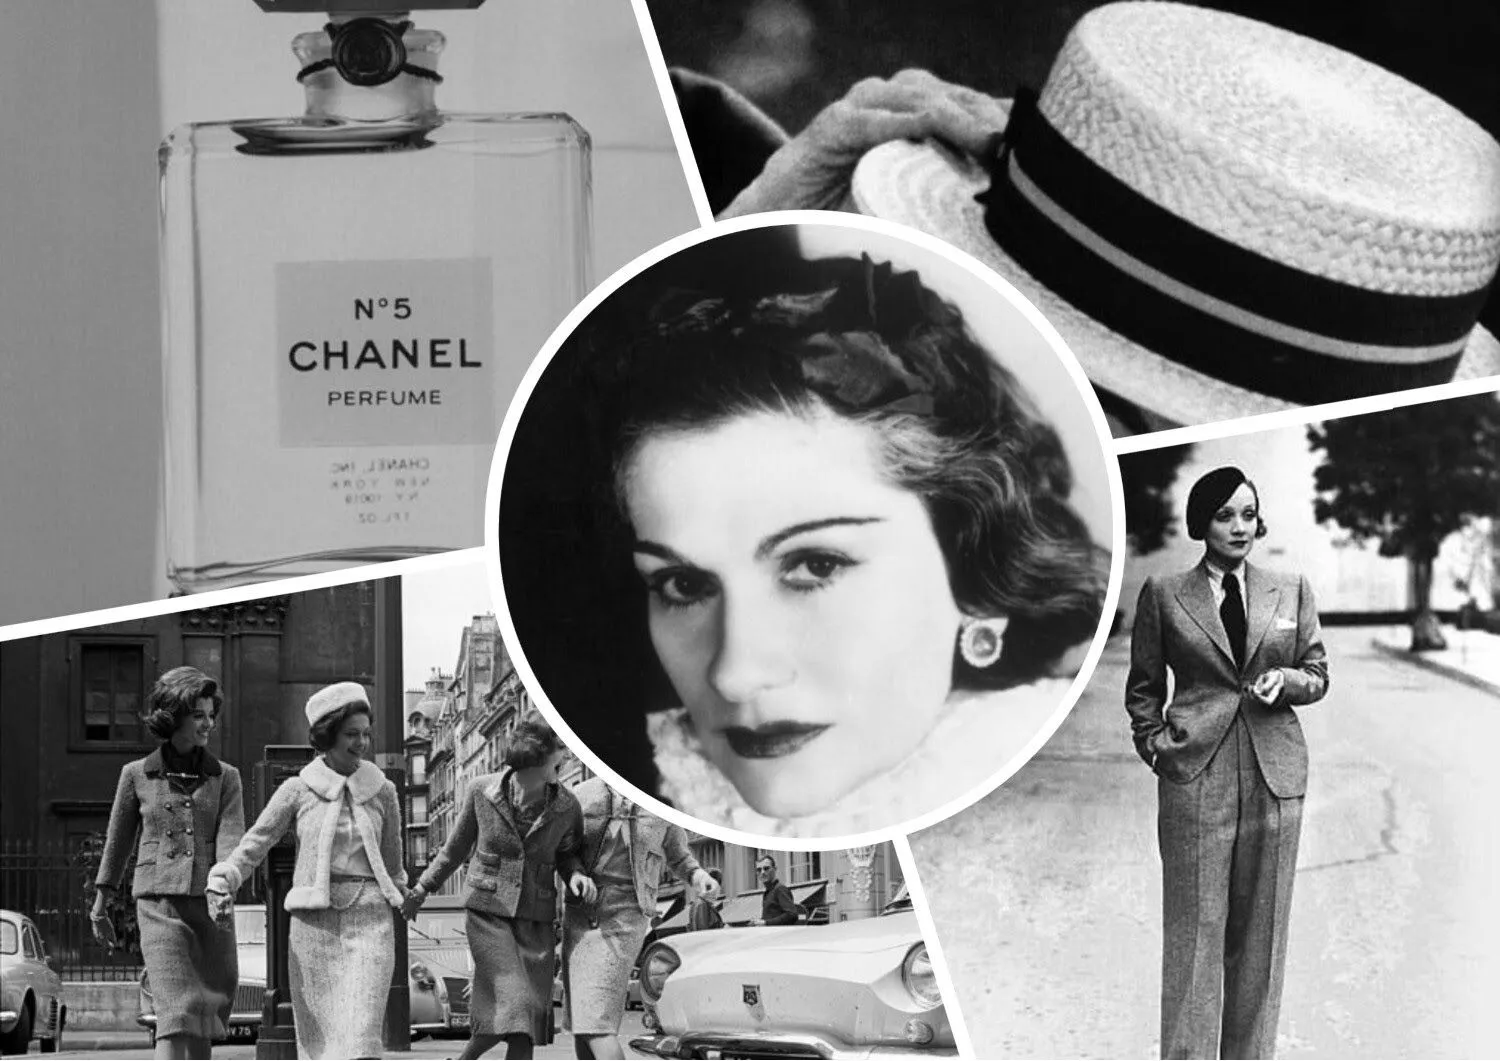 Coco Chanel, 138 de ani de la naștere. Importanța cifrei 5 într-o casă de modă atât de importantă